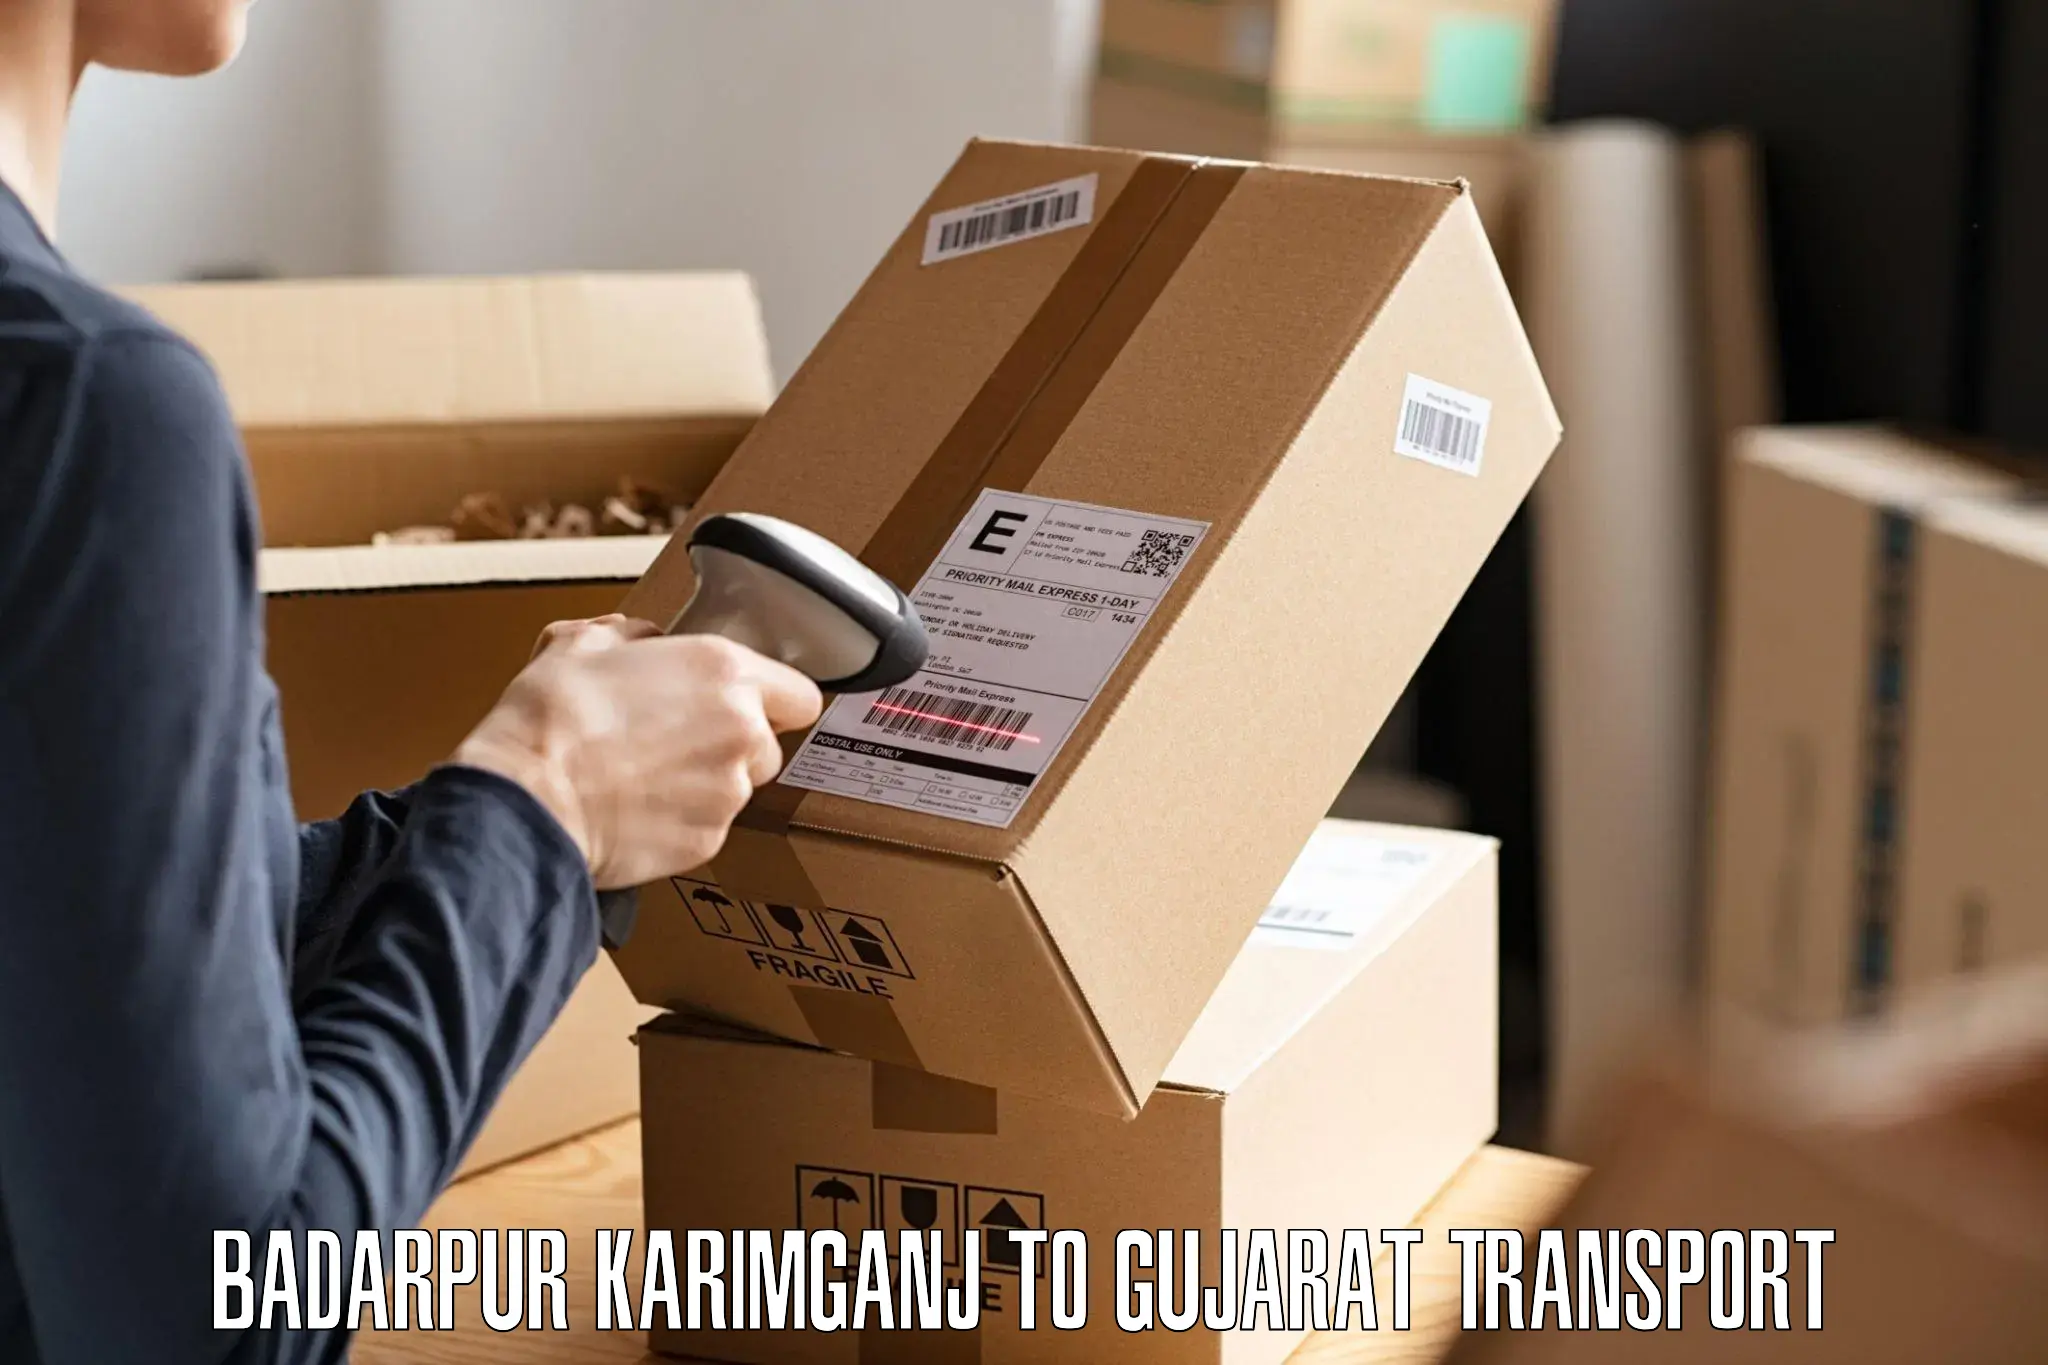 Vehicle parcel service Badarpur Karimganj to Idar